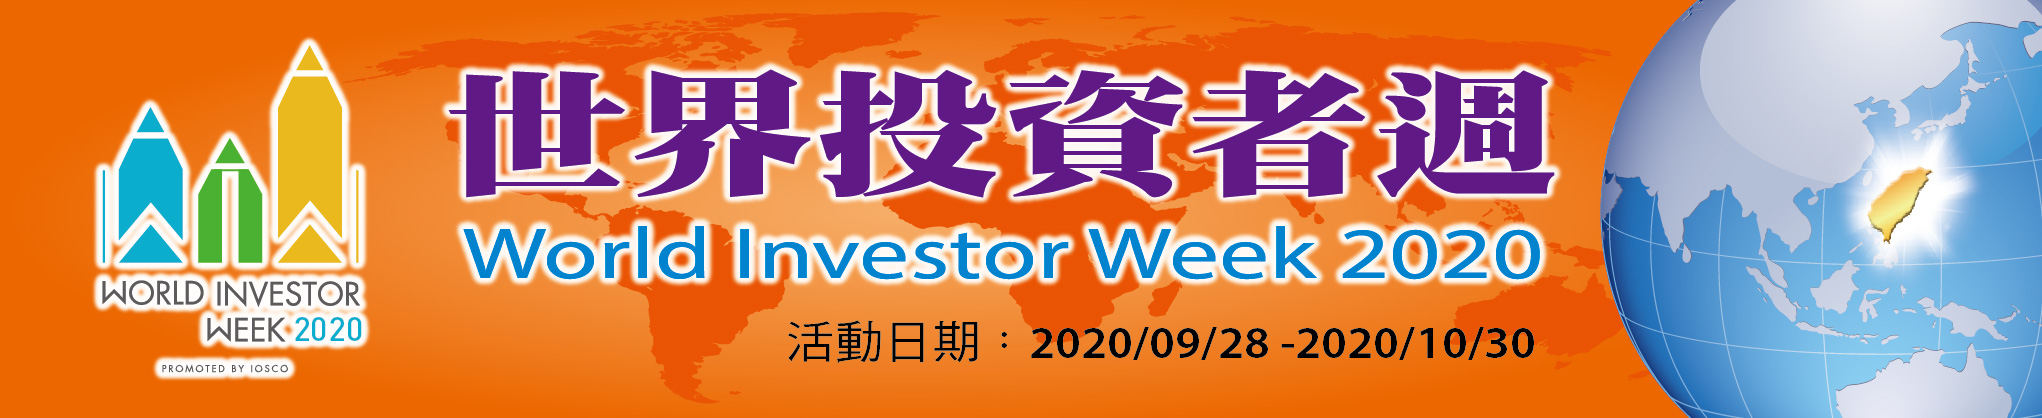 世界投資者週